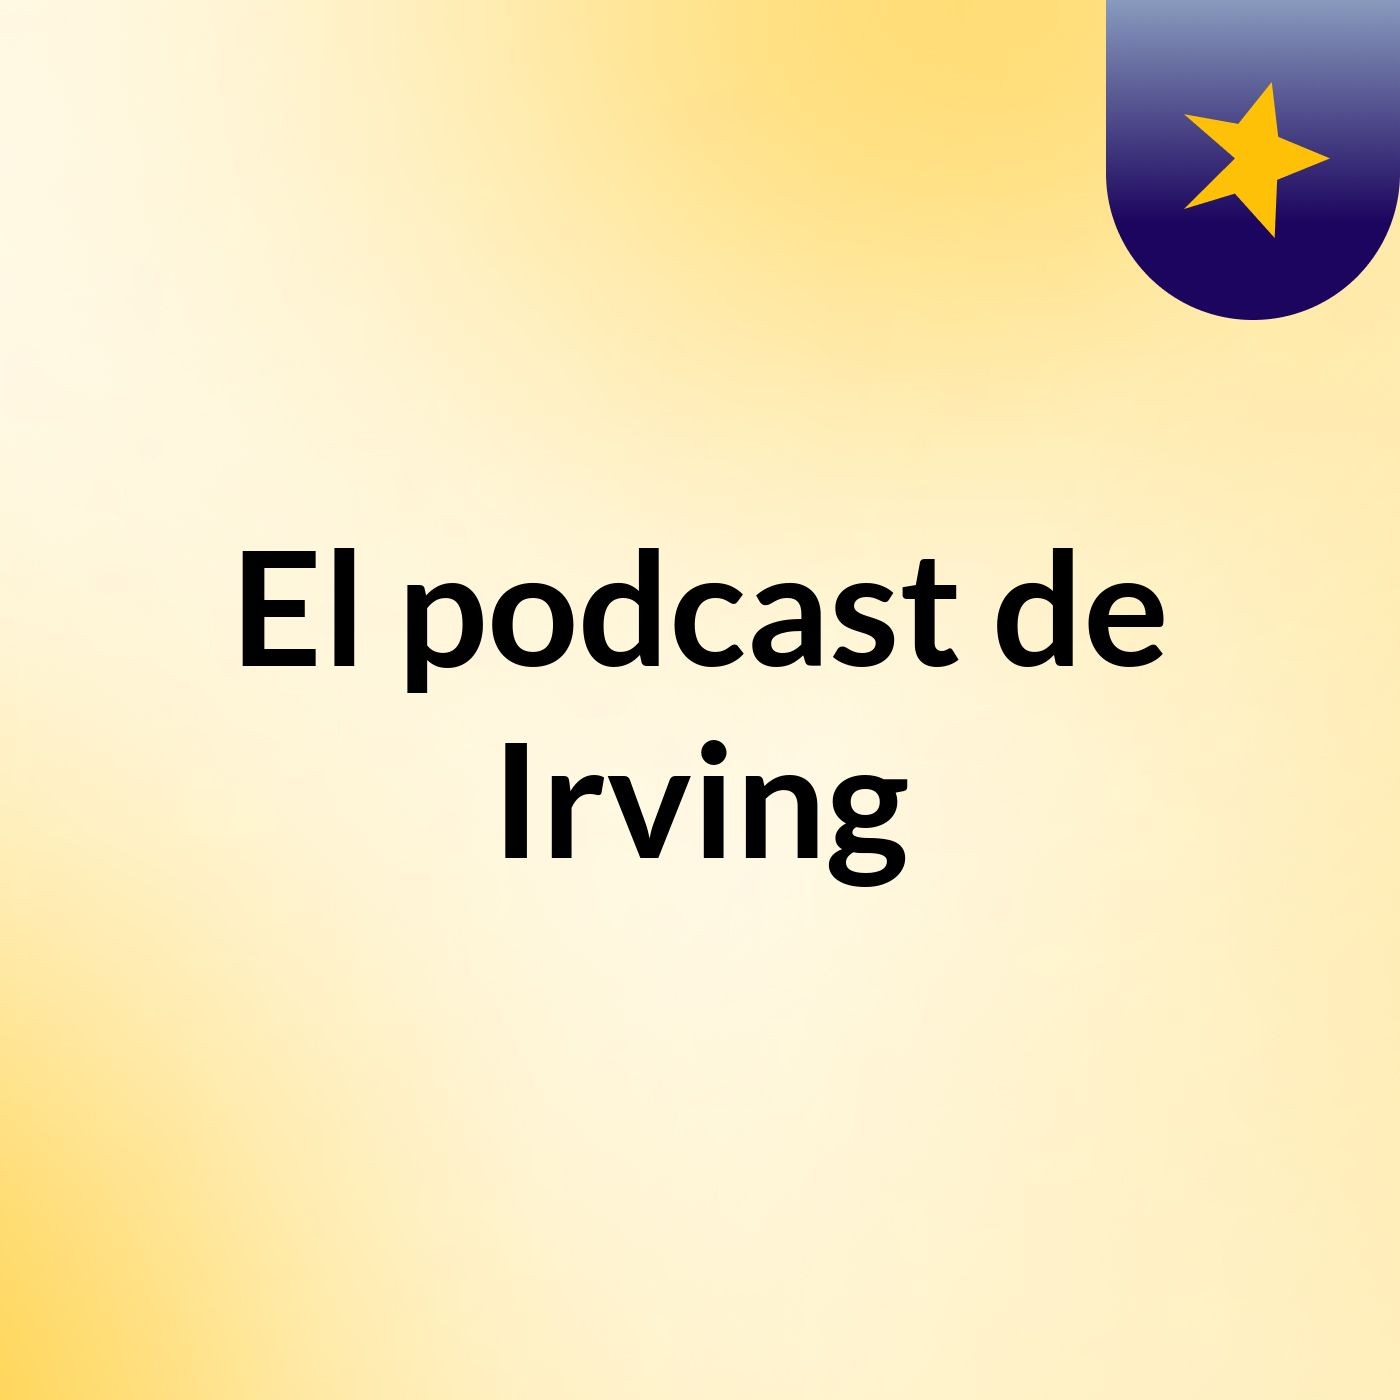 El podcast de Irving